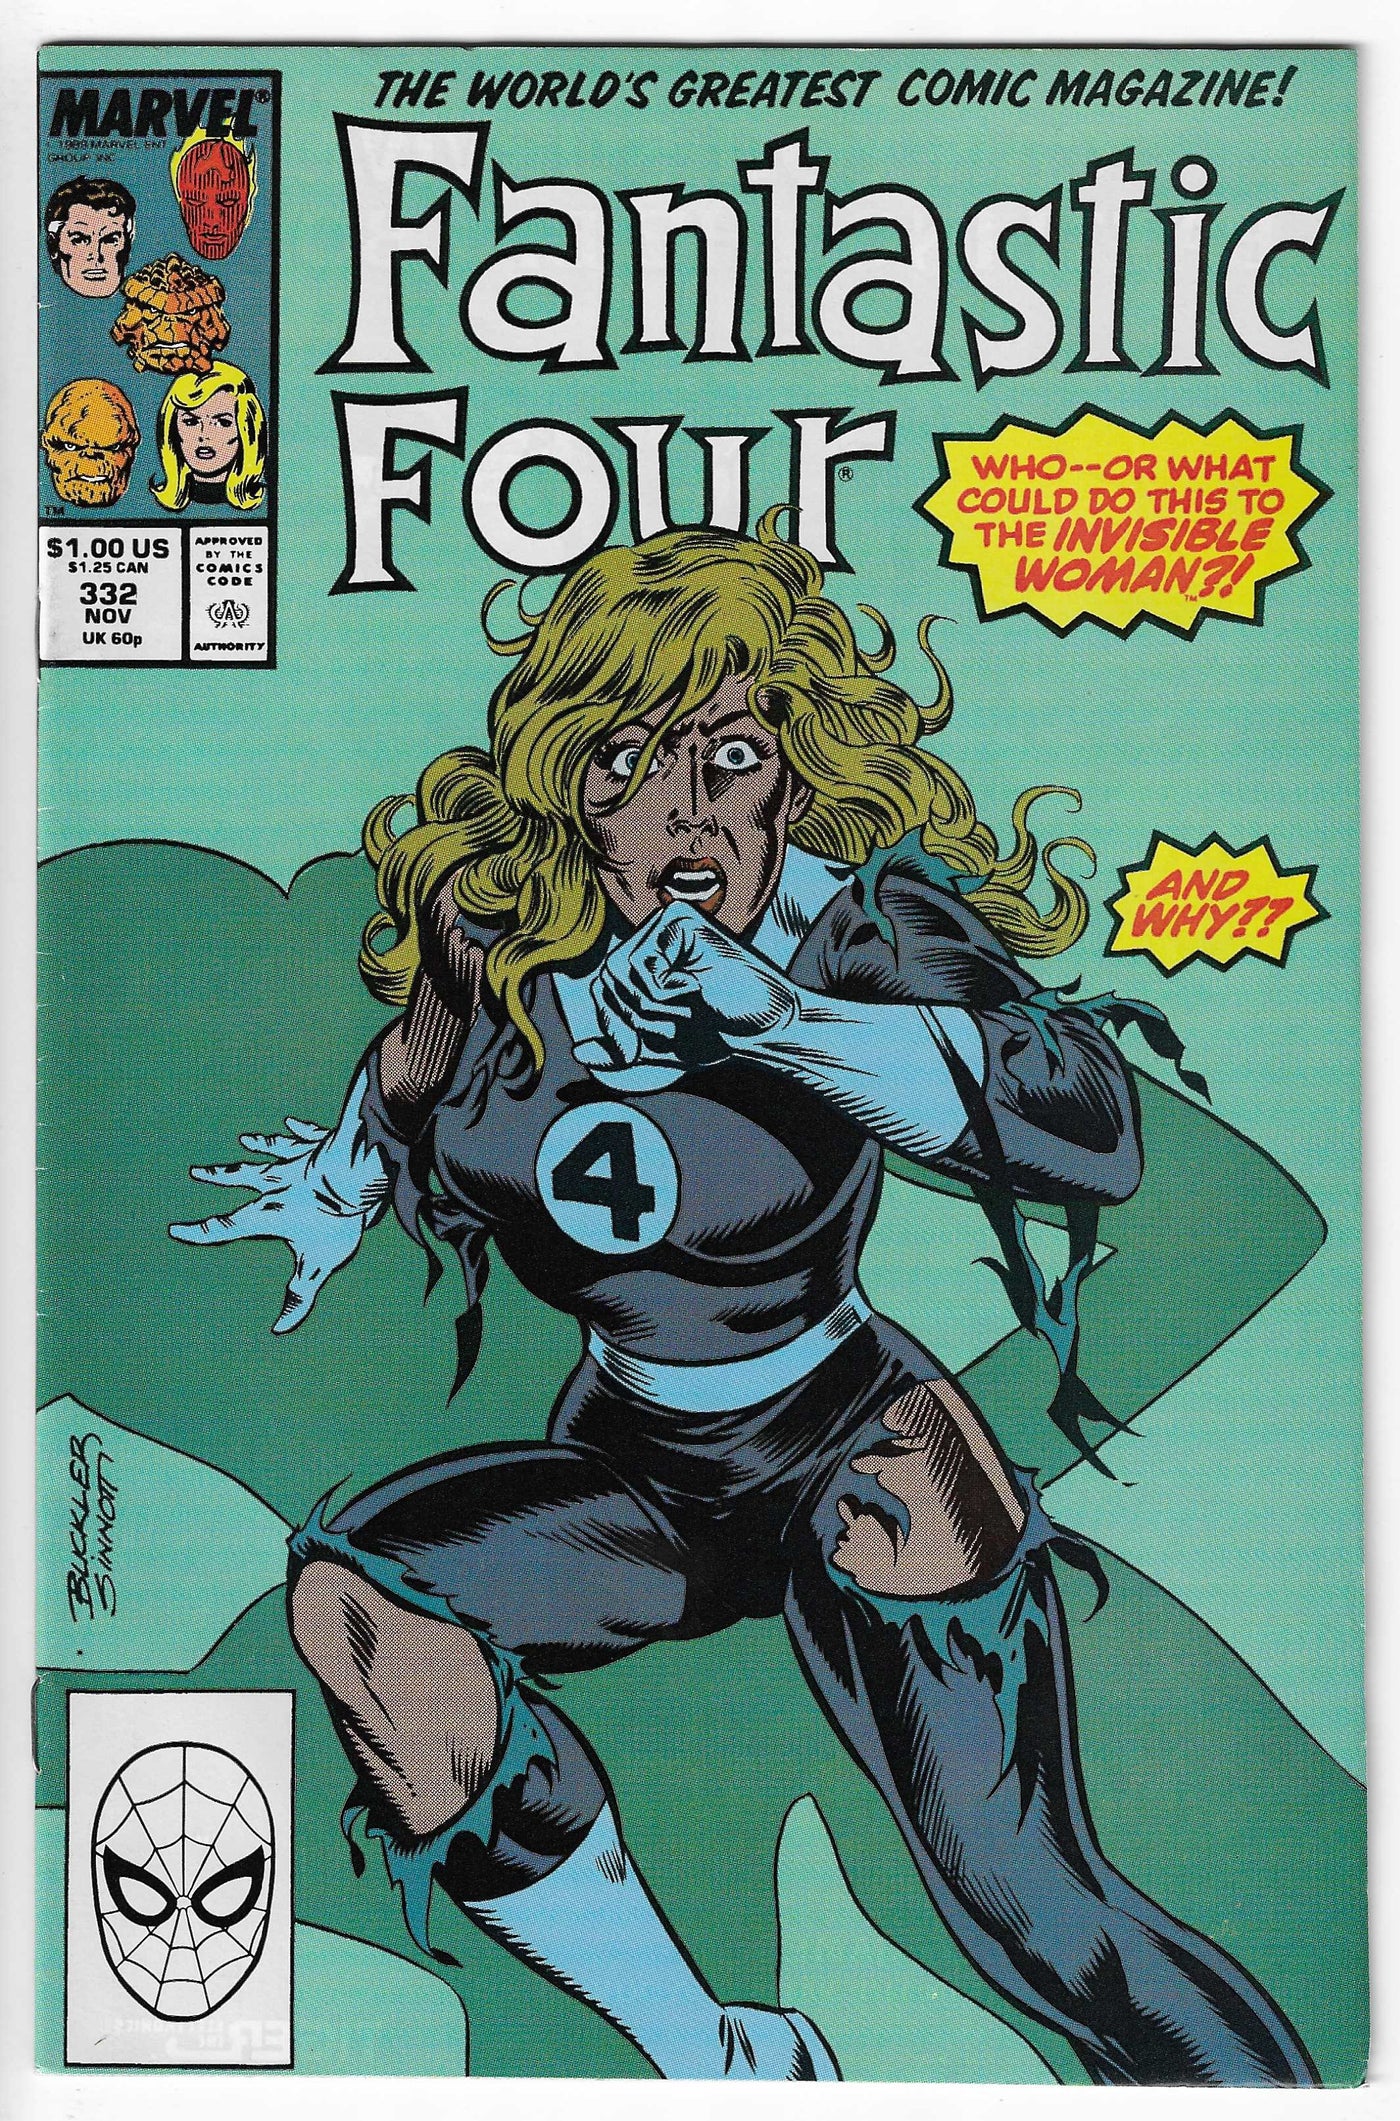 Fantastic Four (Volume 1) #332